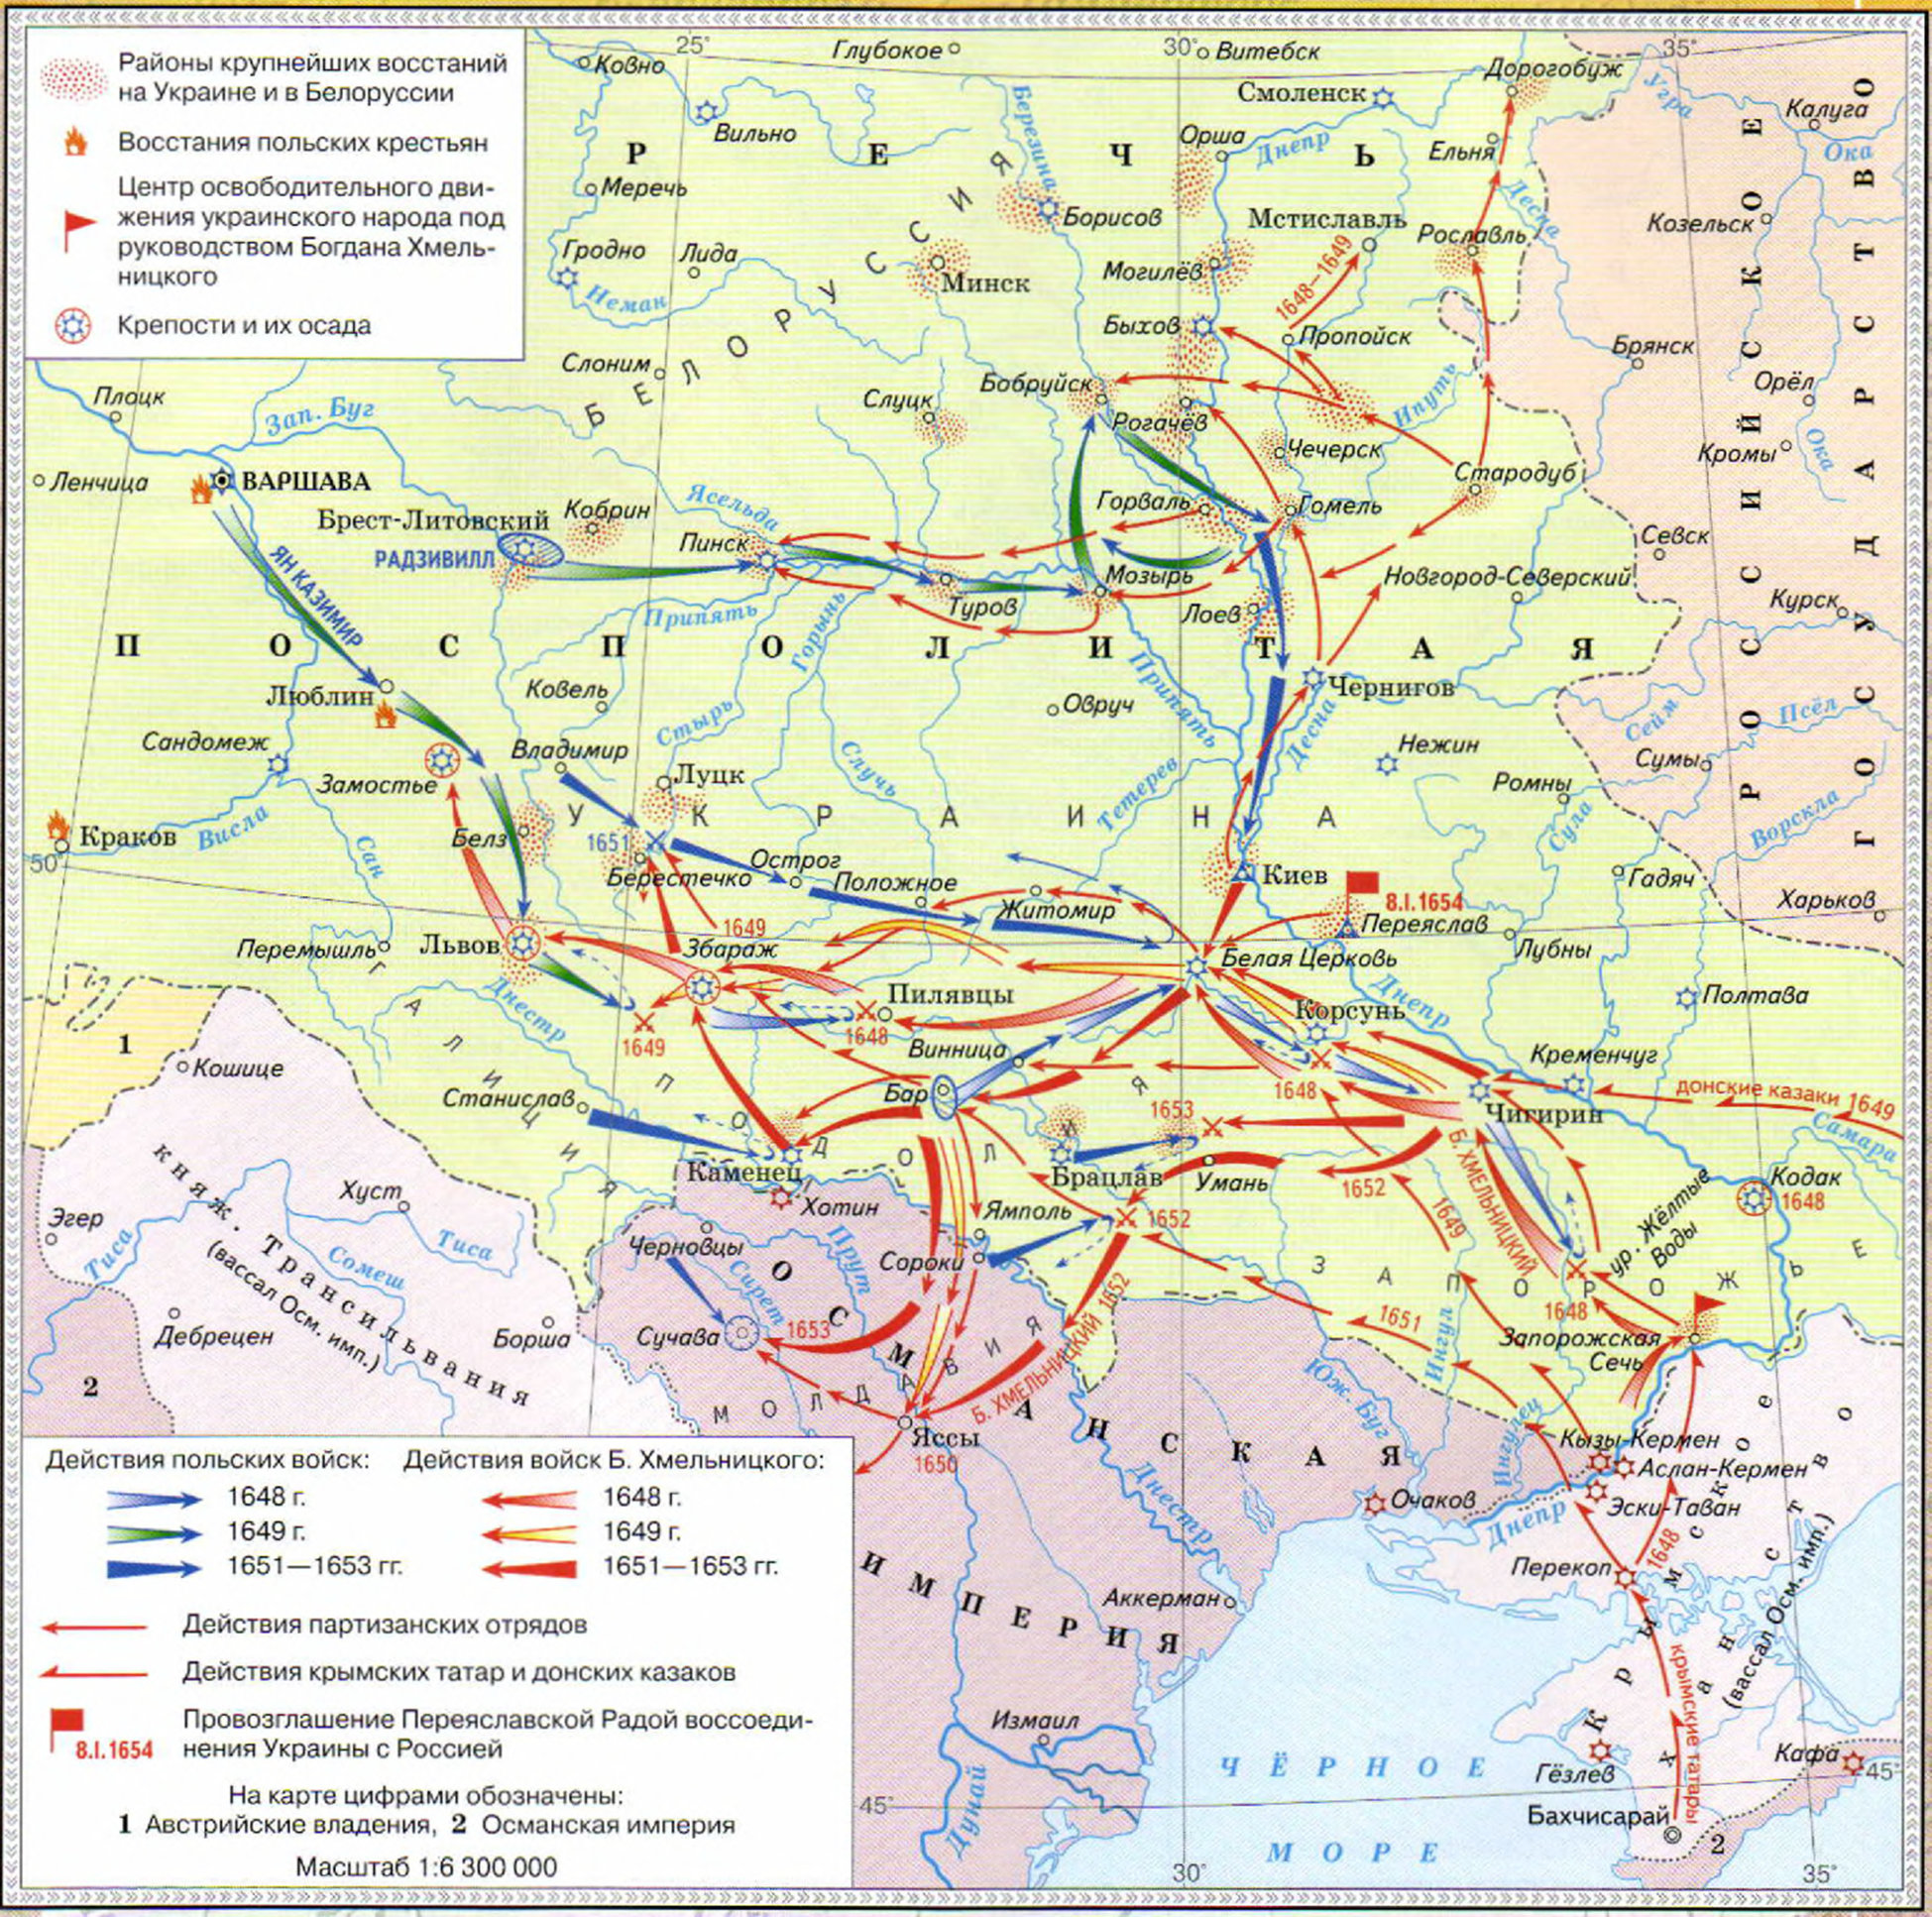 Переход земель войска запорожского в состав россии